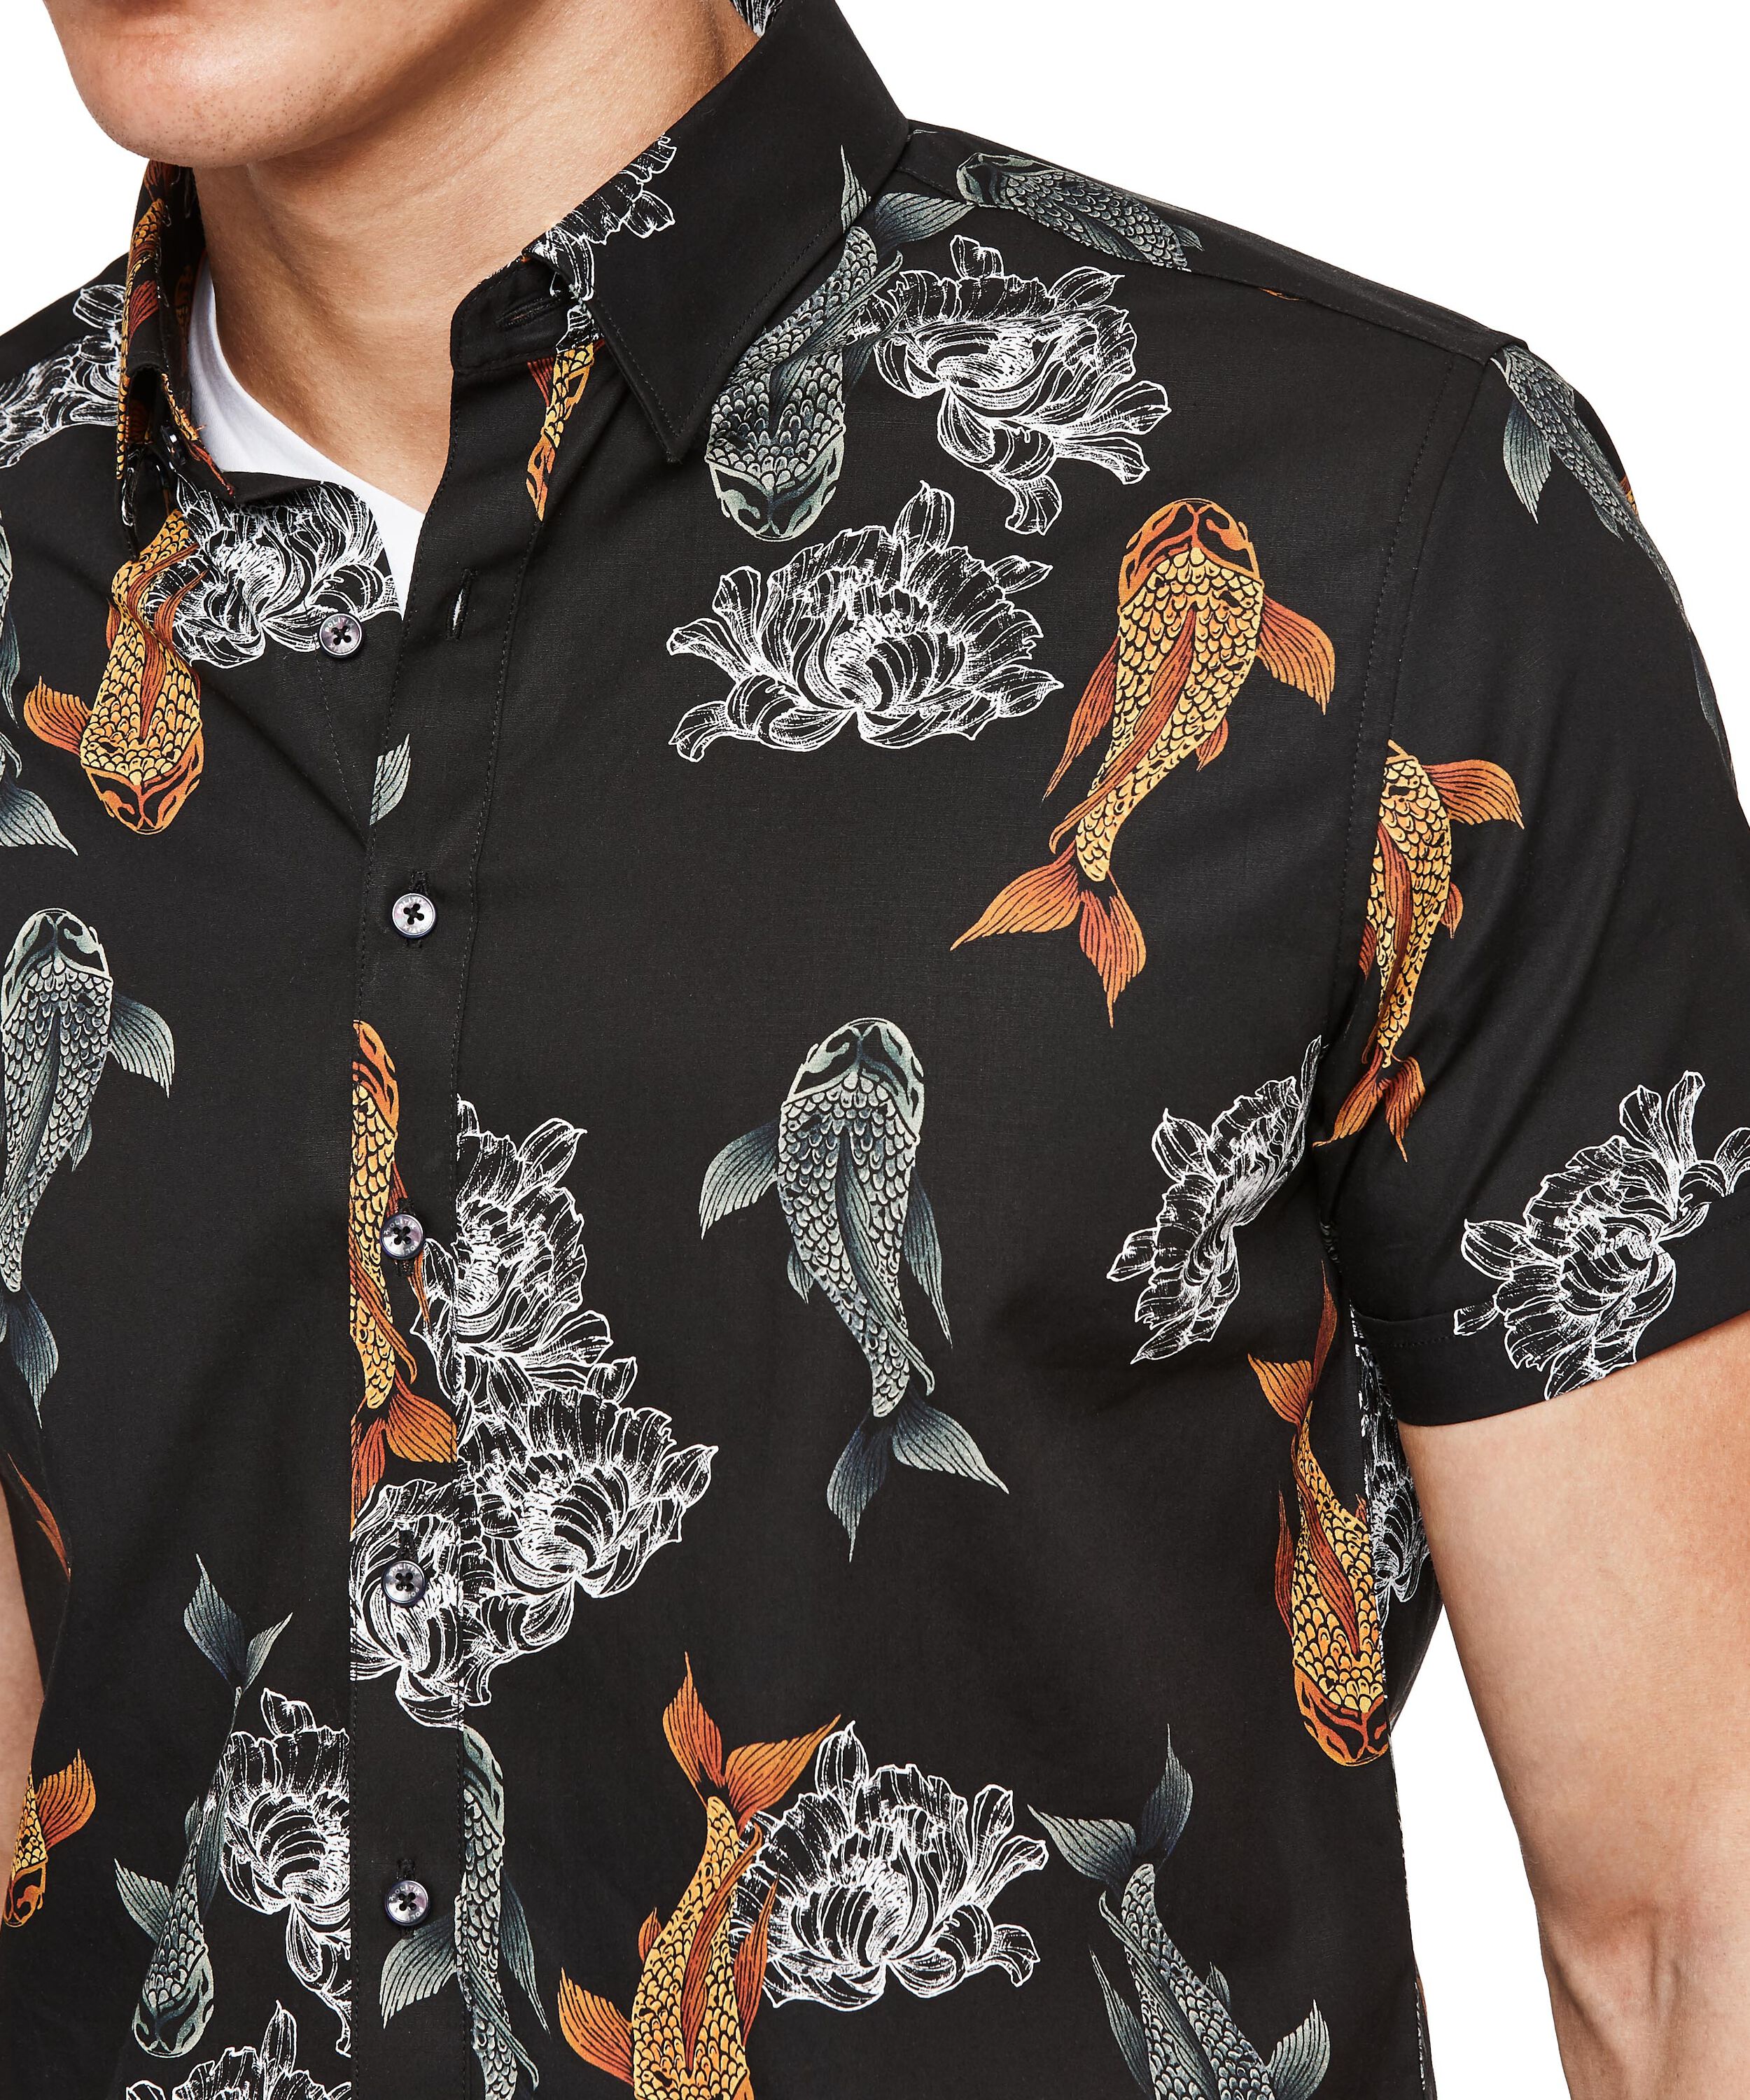 Carp - Black/Orange - Ss Floral Carp Fish Print Shirt, Shirts